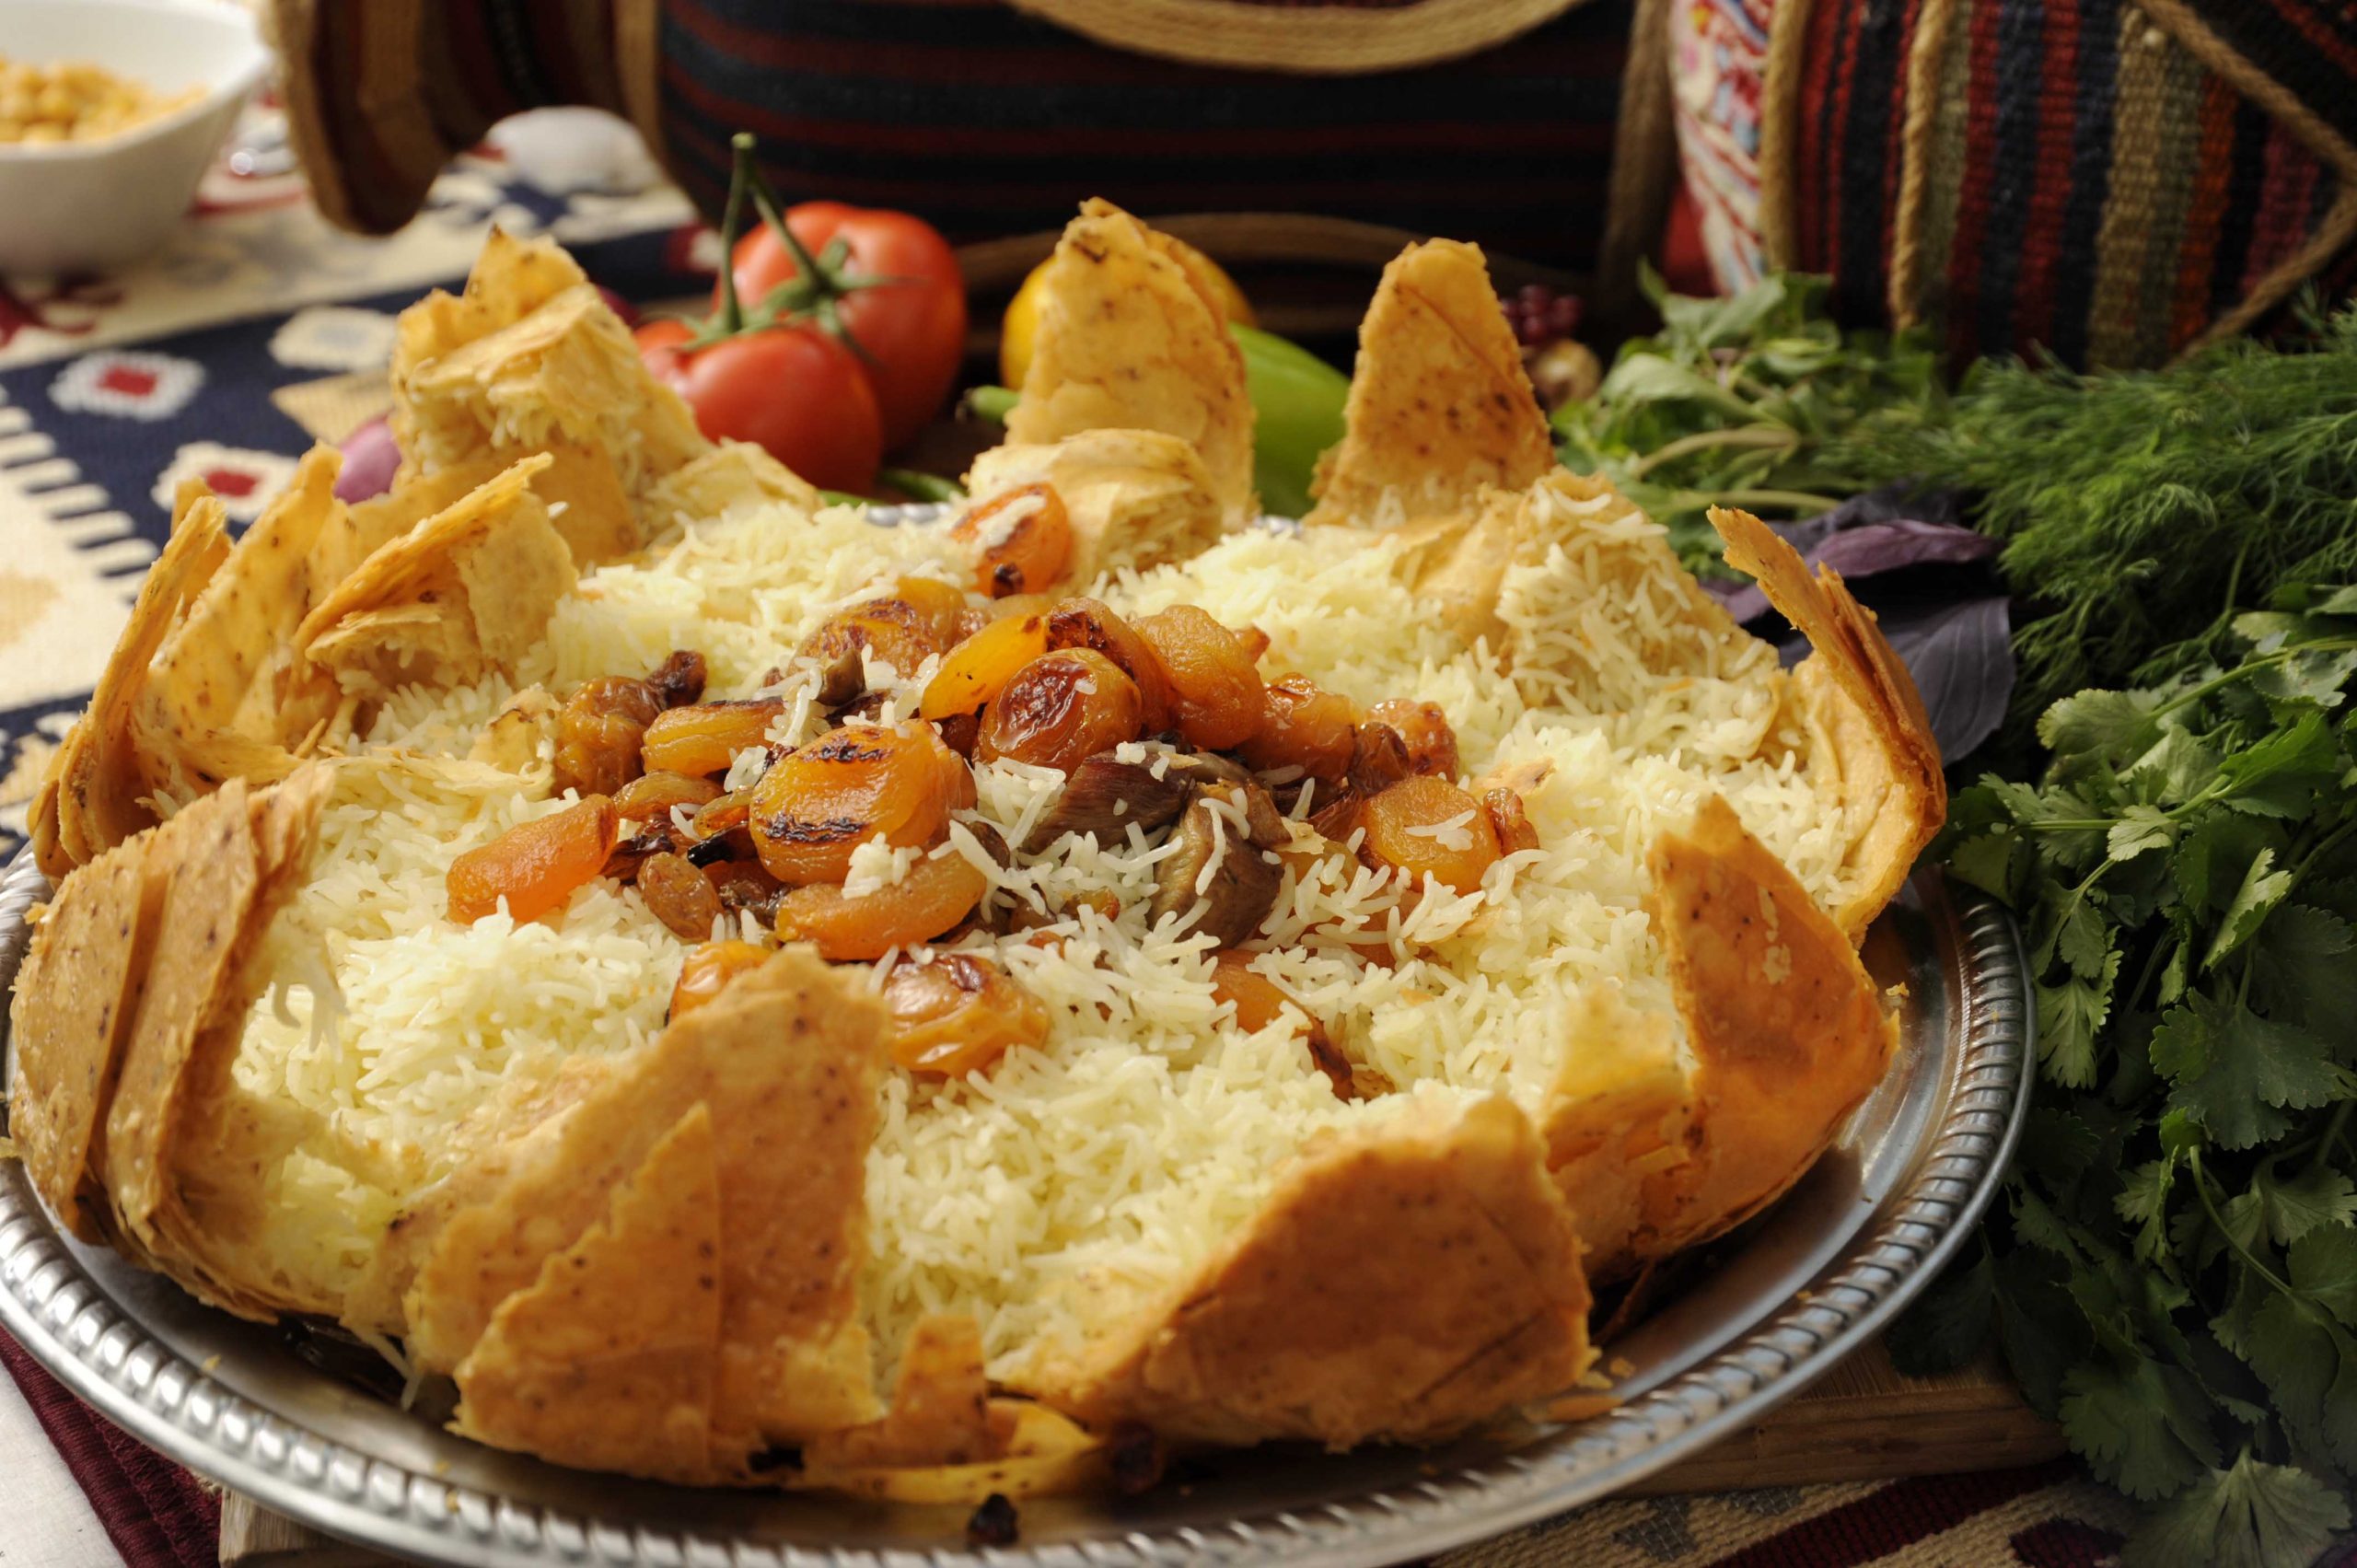 Azerbaijani Cuisine- Plov or pilaf